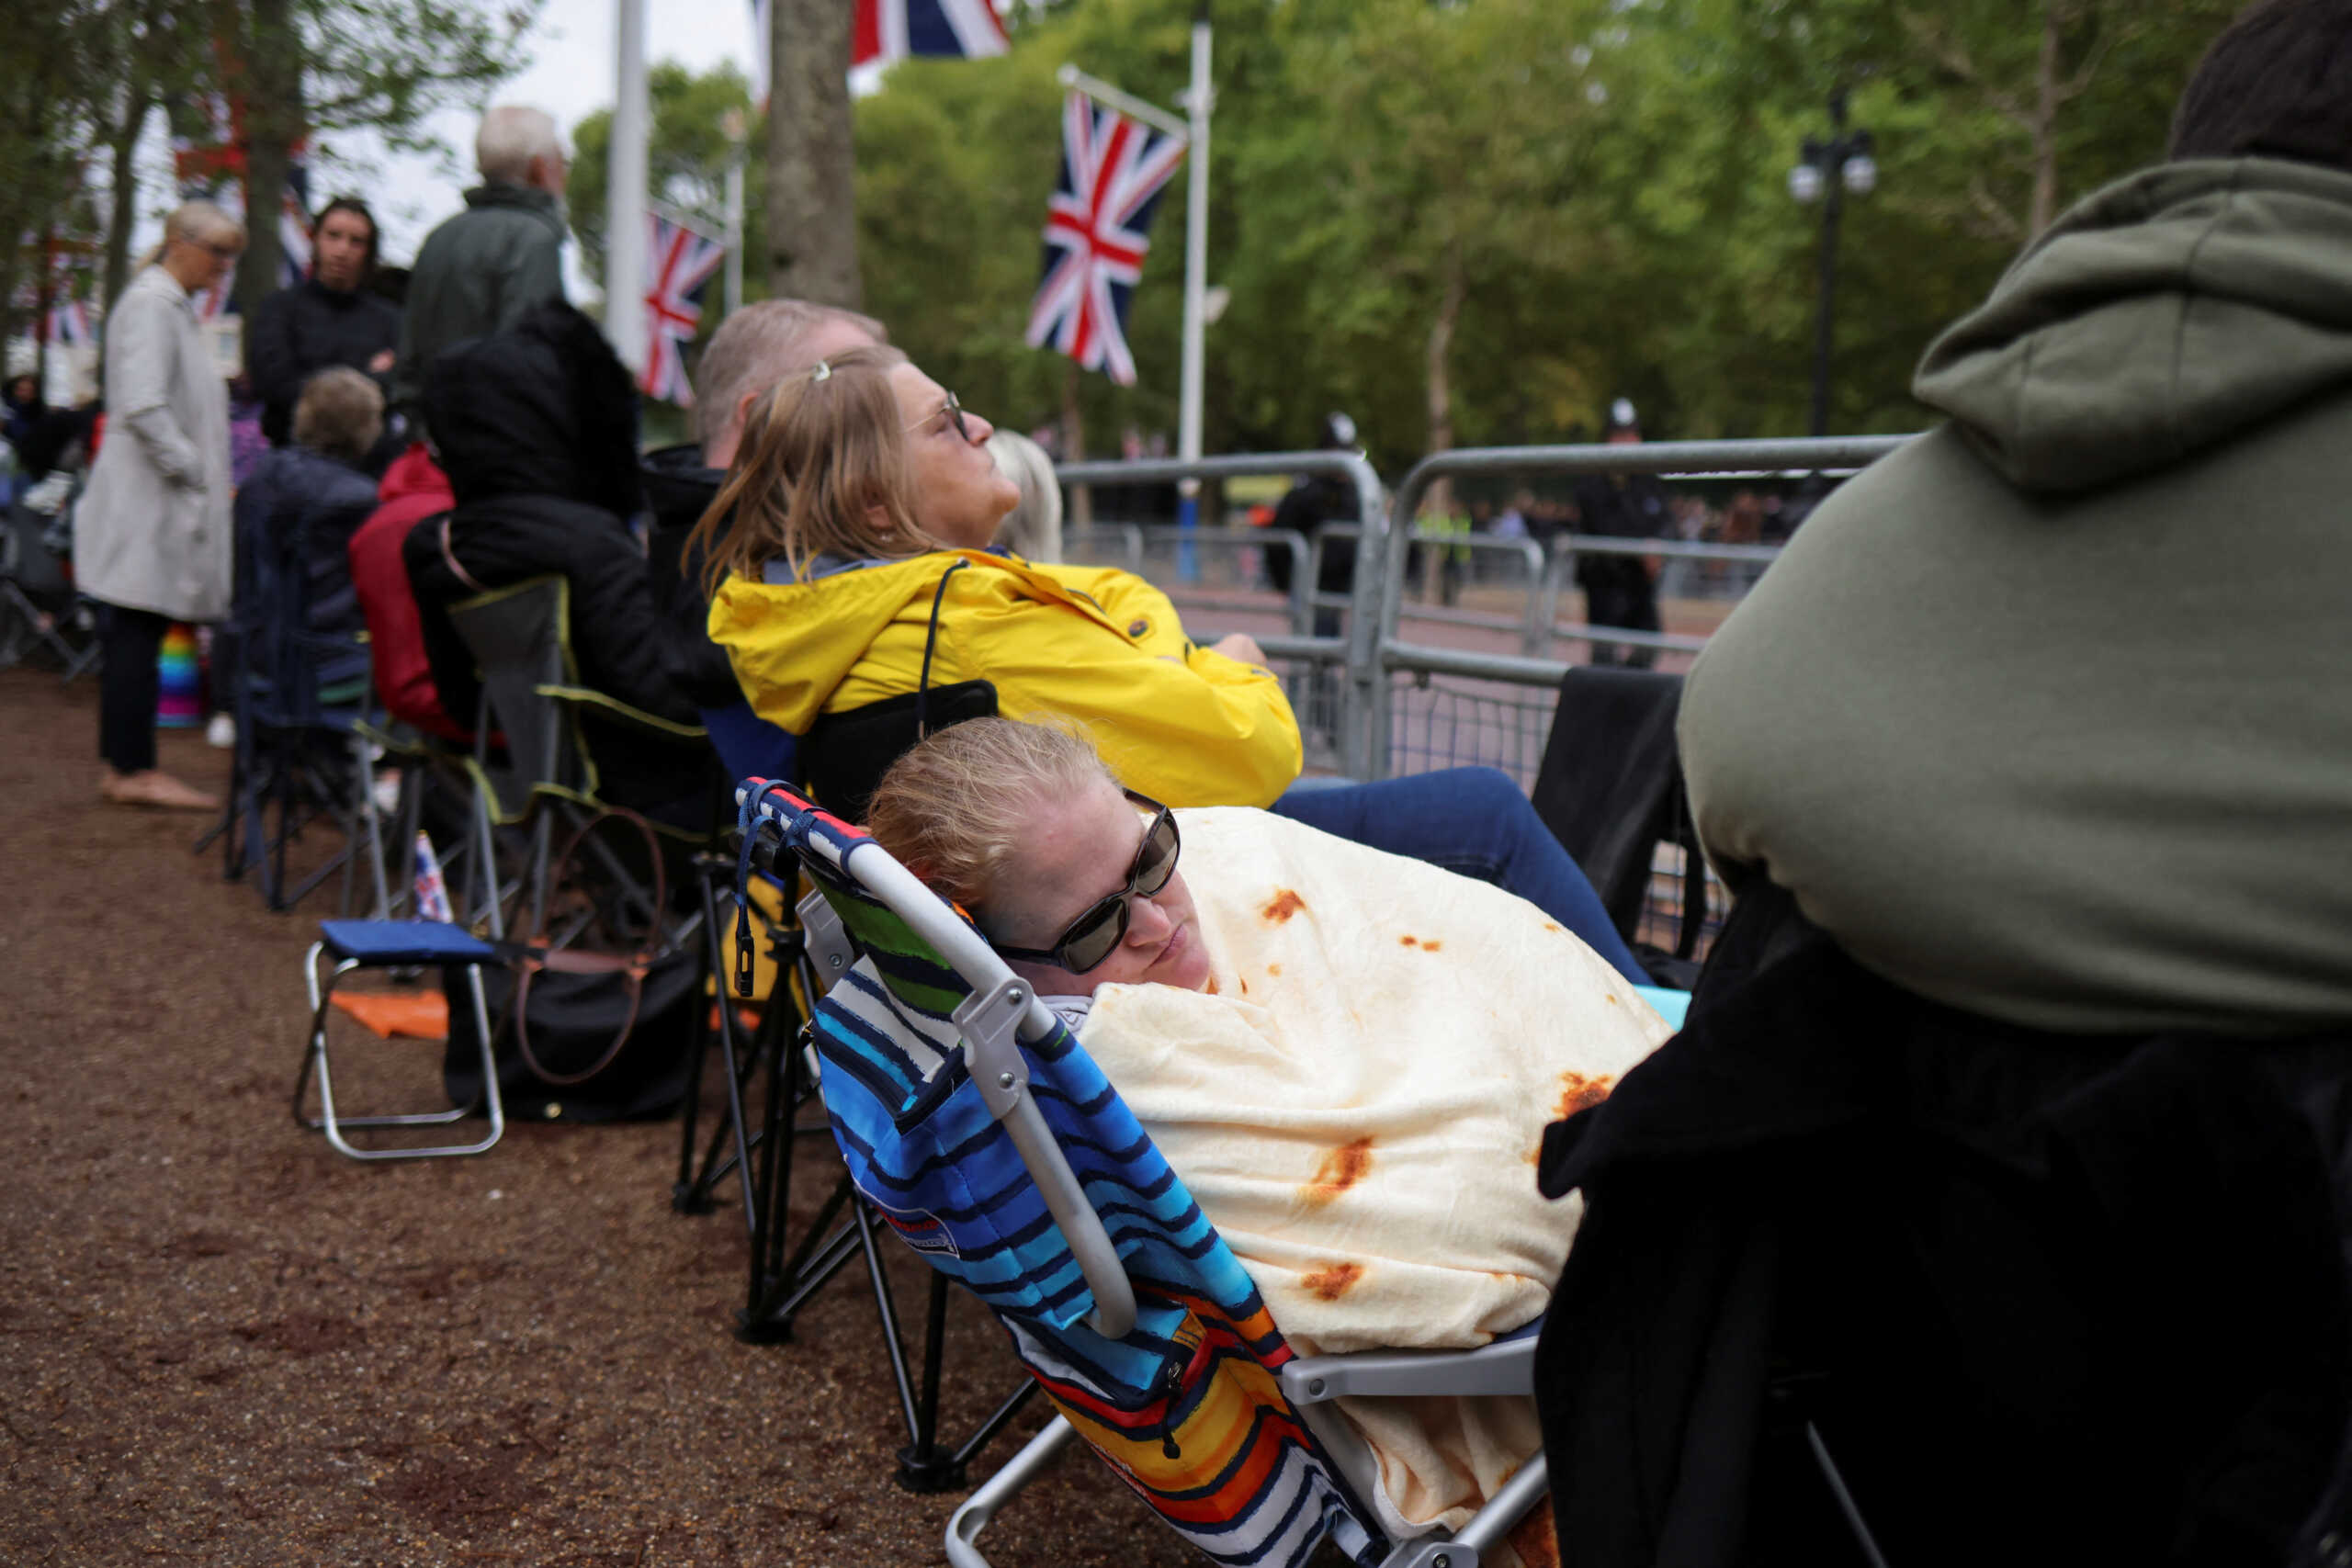 Βασίλισσα Ελισάβετ: Πλήθος κόσμου αλλά νεκρική σιγή στο Λονδίνο – Ένα εκατομμύριο πολίτες στο τελευταίο προσκύνημα